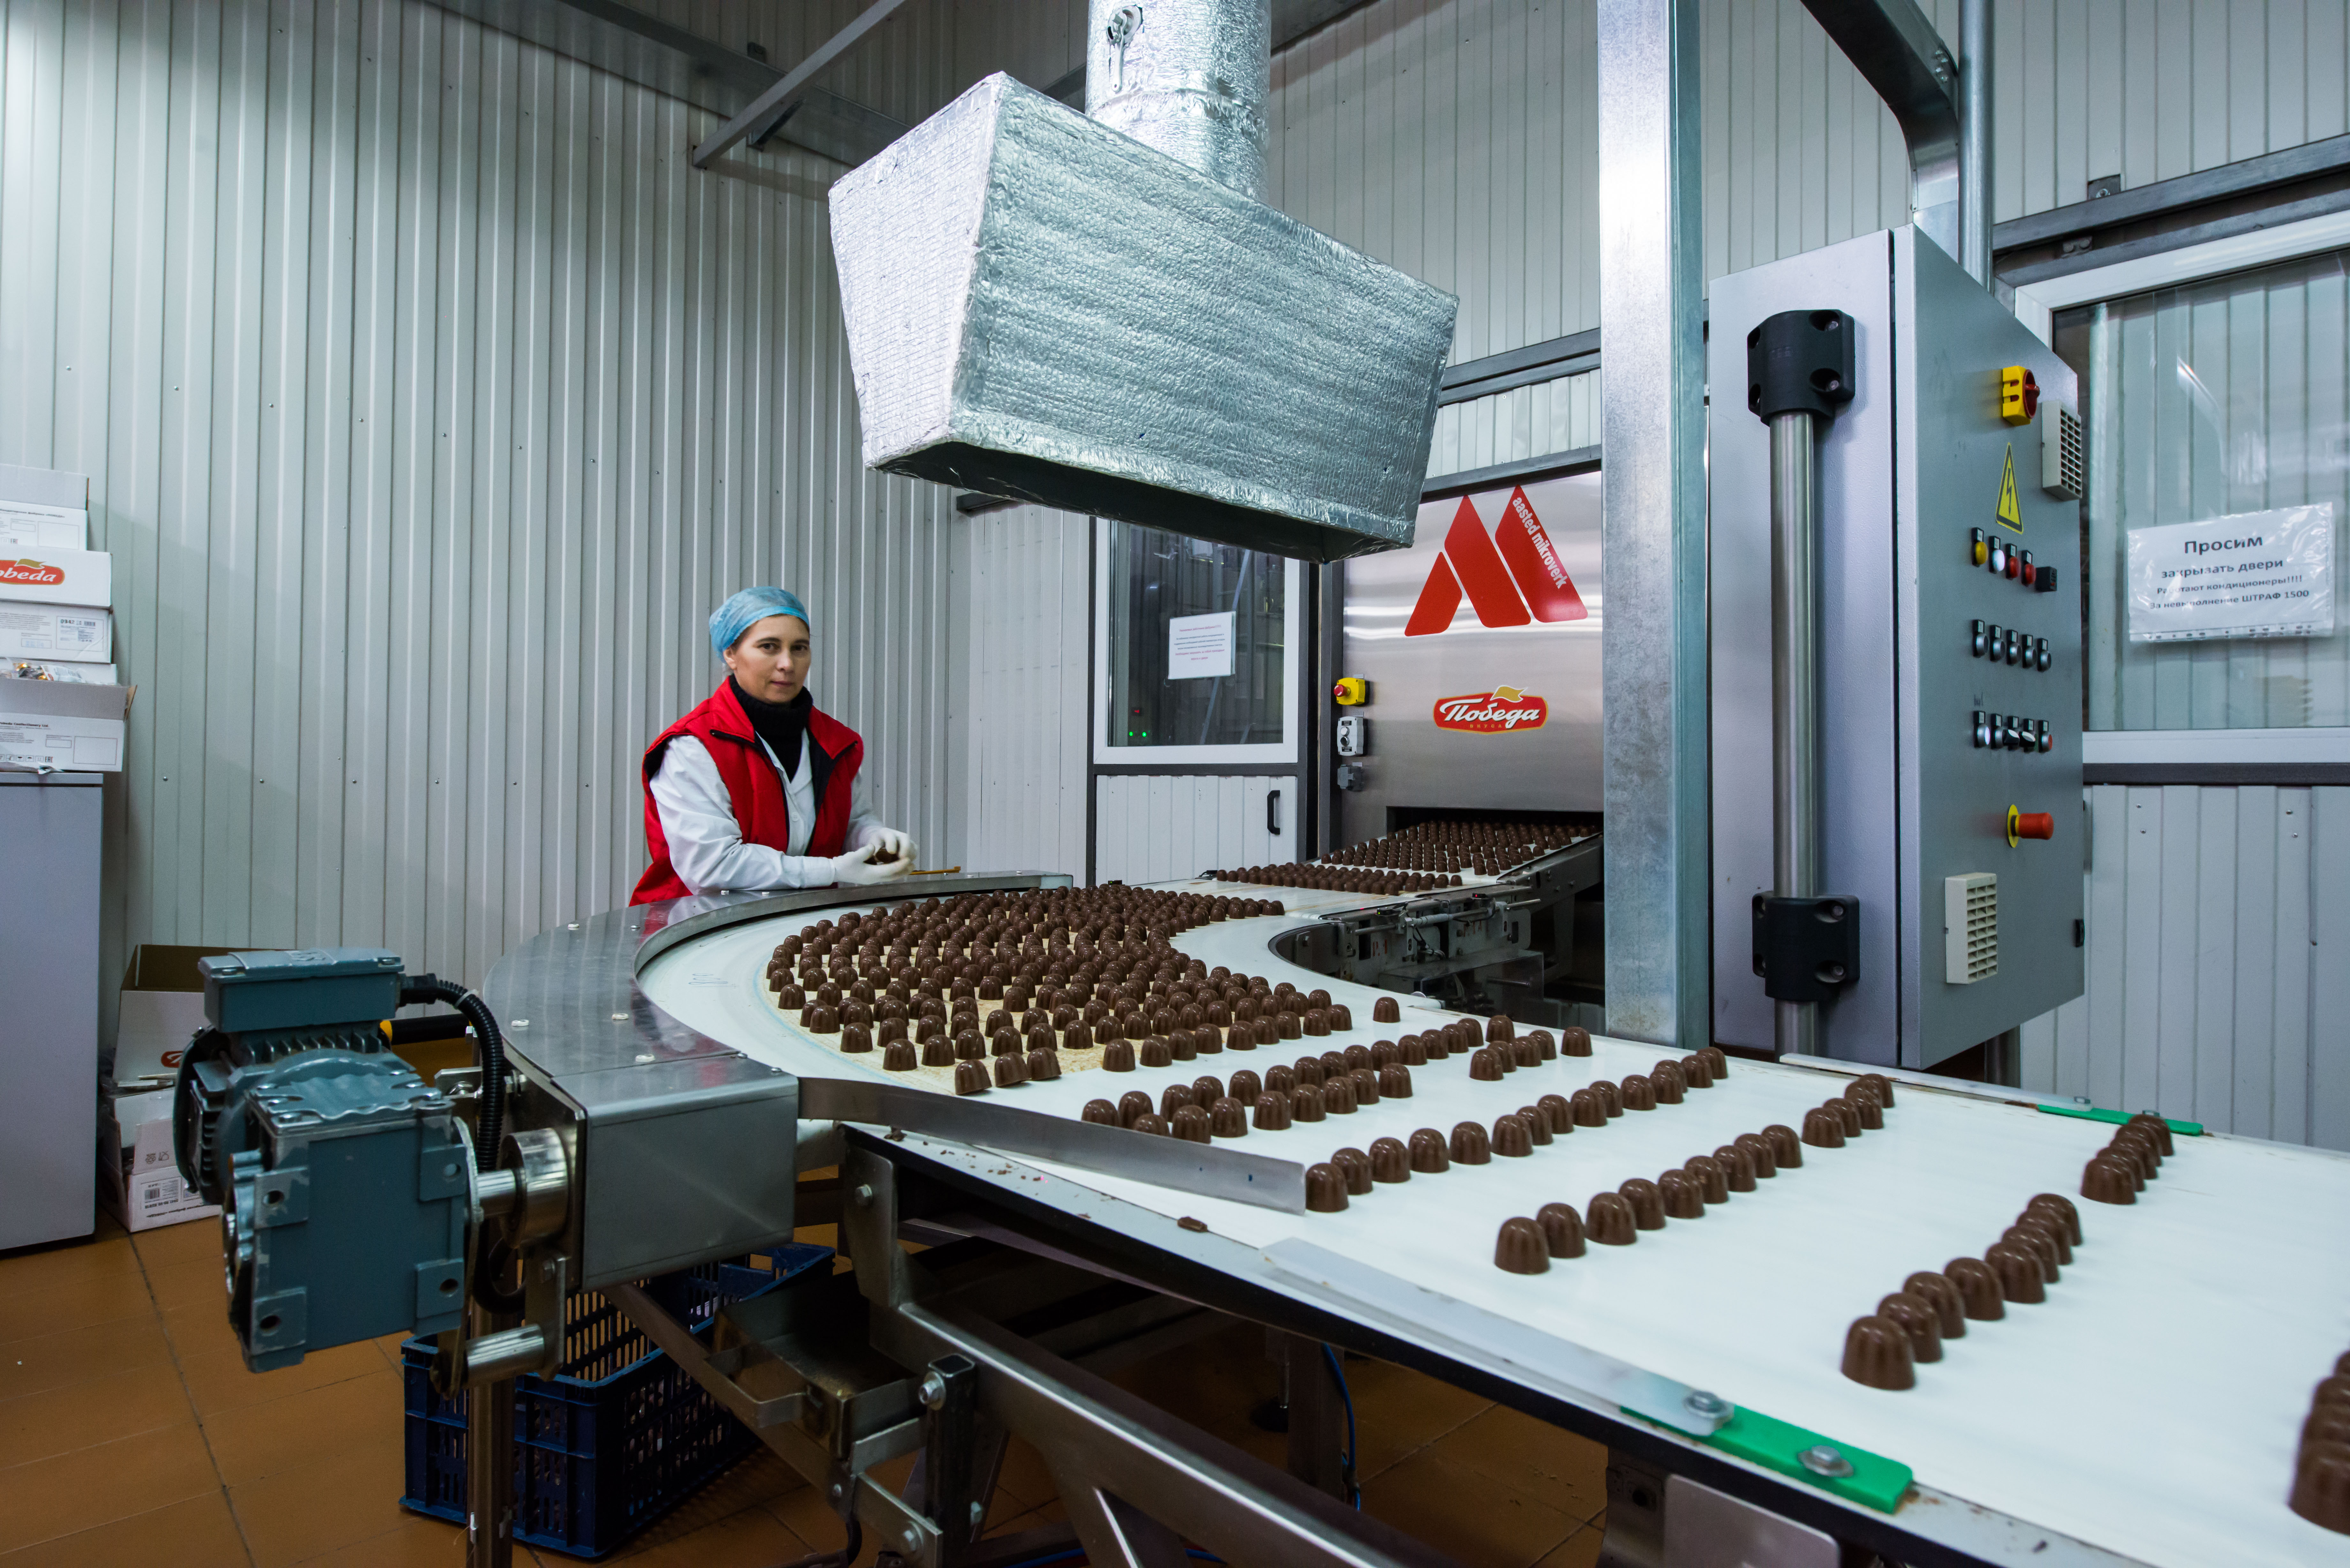 Шоколадная фабрика «Победа» работает в Егорьевске с 1999 года